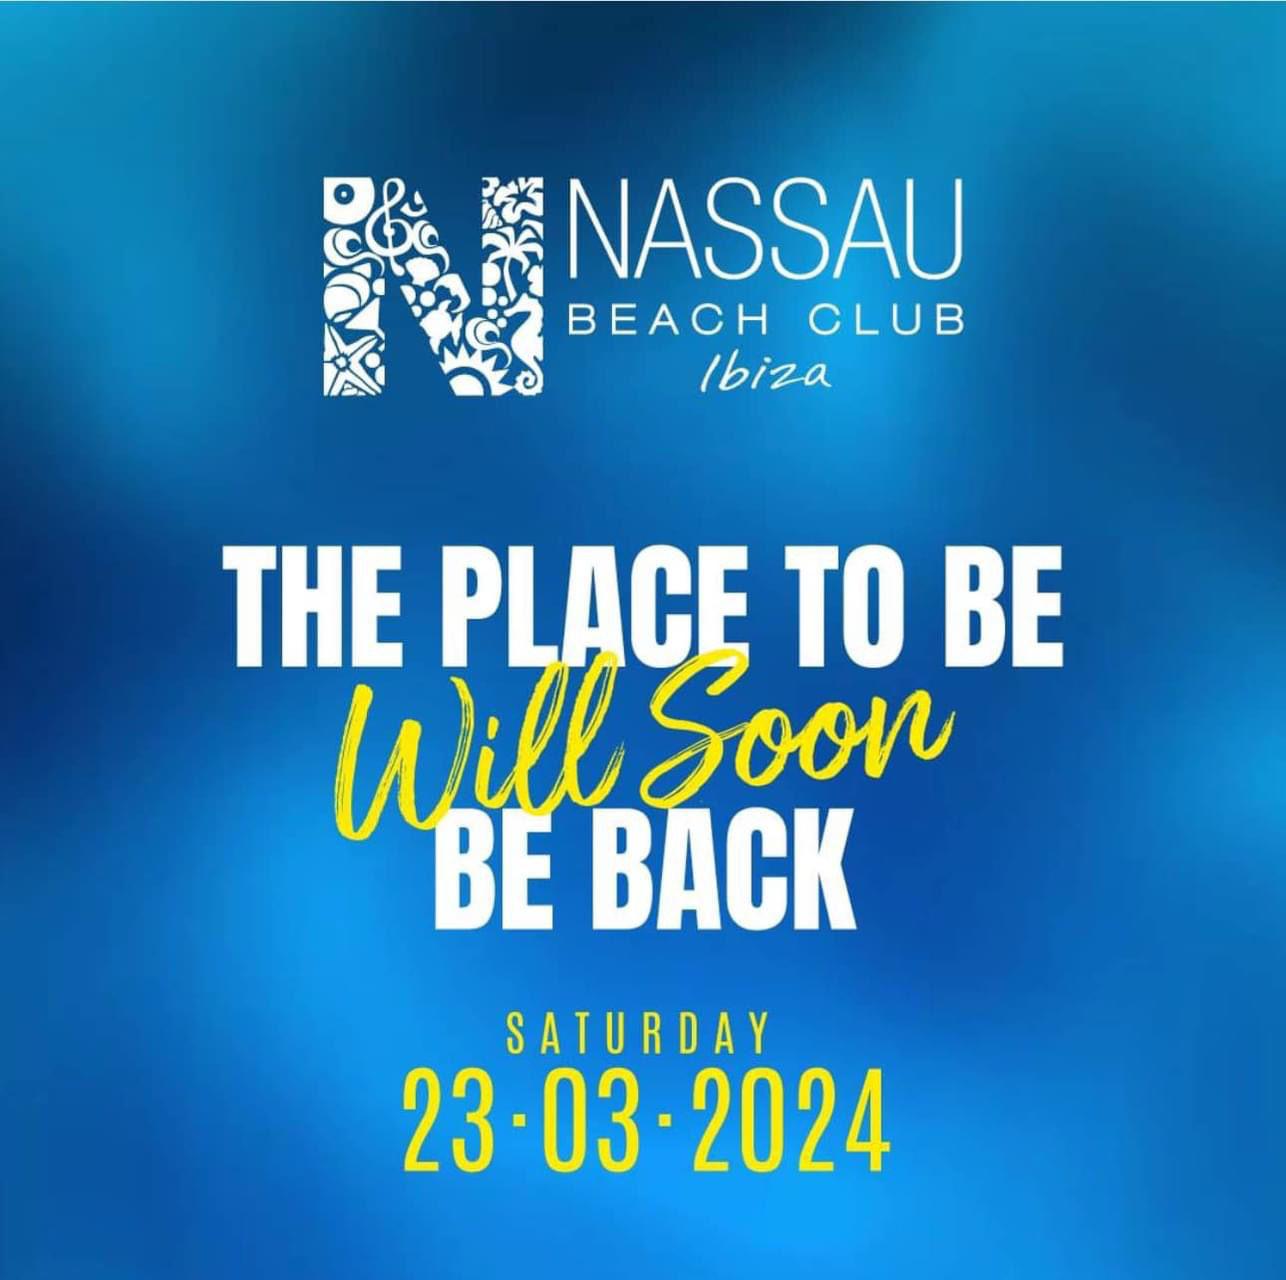 NASSAU BEACH CLUB IBIZA